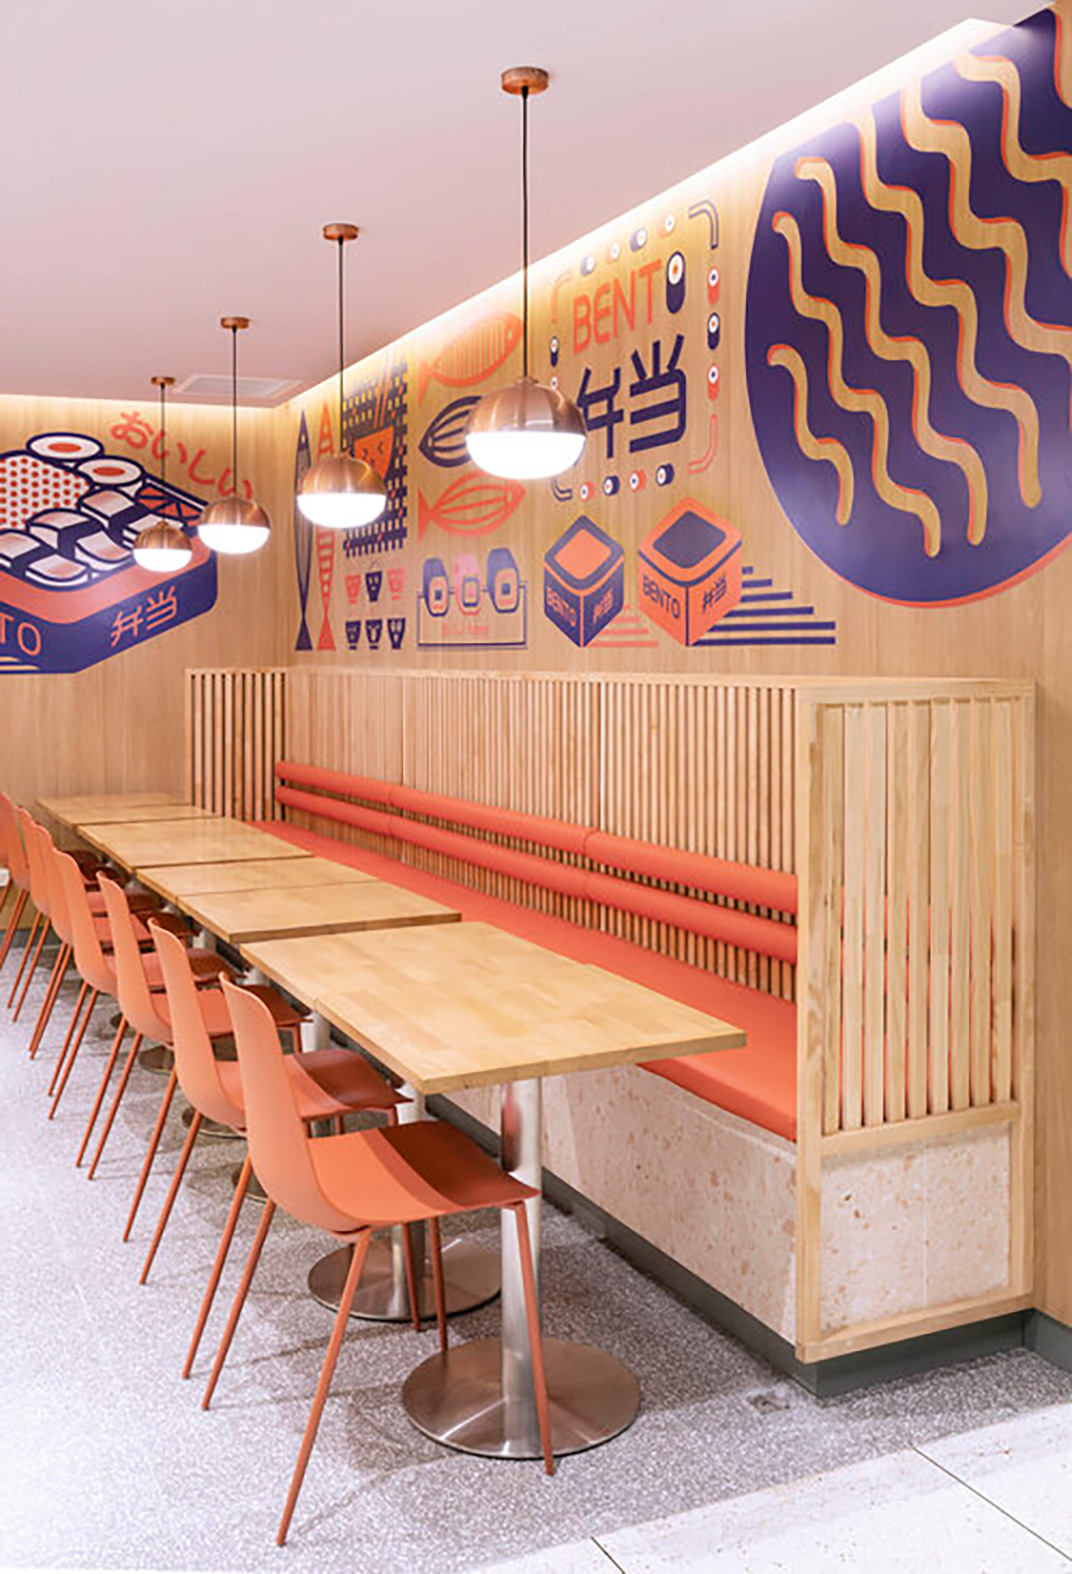 考里本托便当和寿司餐厅 Span Design 视觉餐饮 全球餐饮研究所 vi设计 空间设计 深圳 杭州 武汉 上海 广州